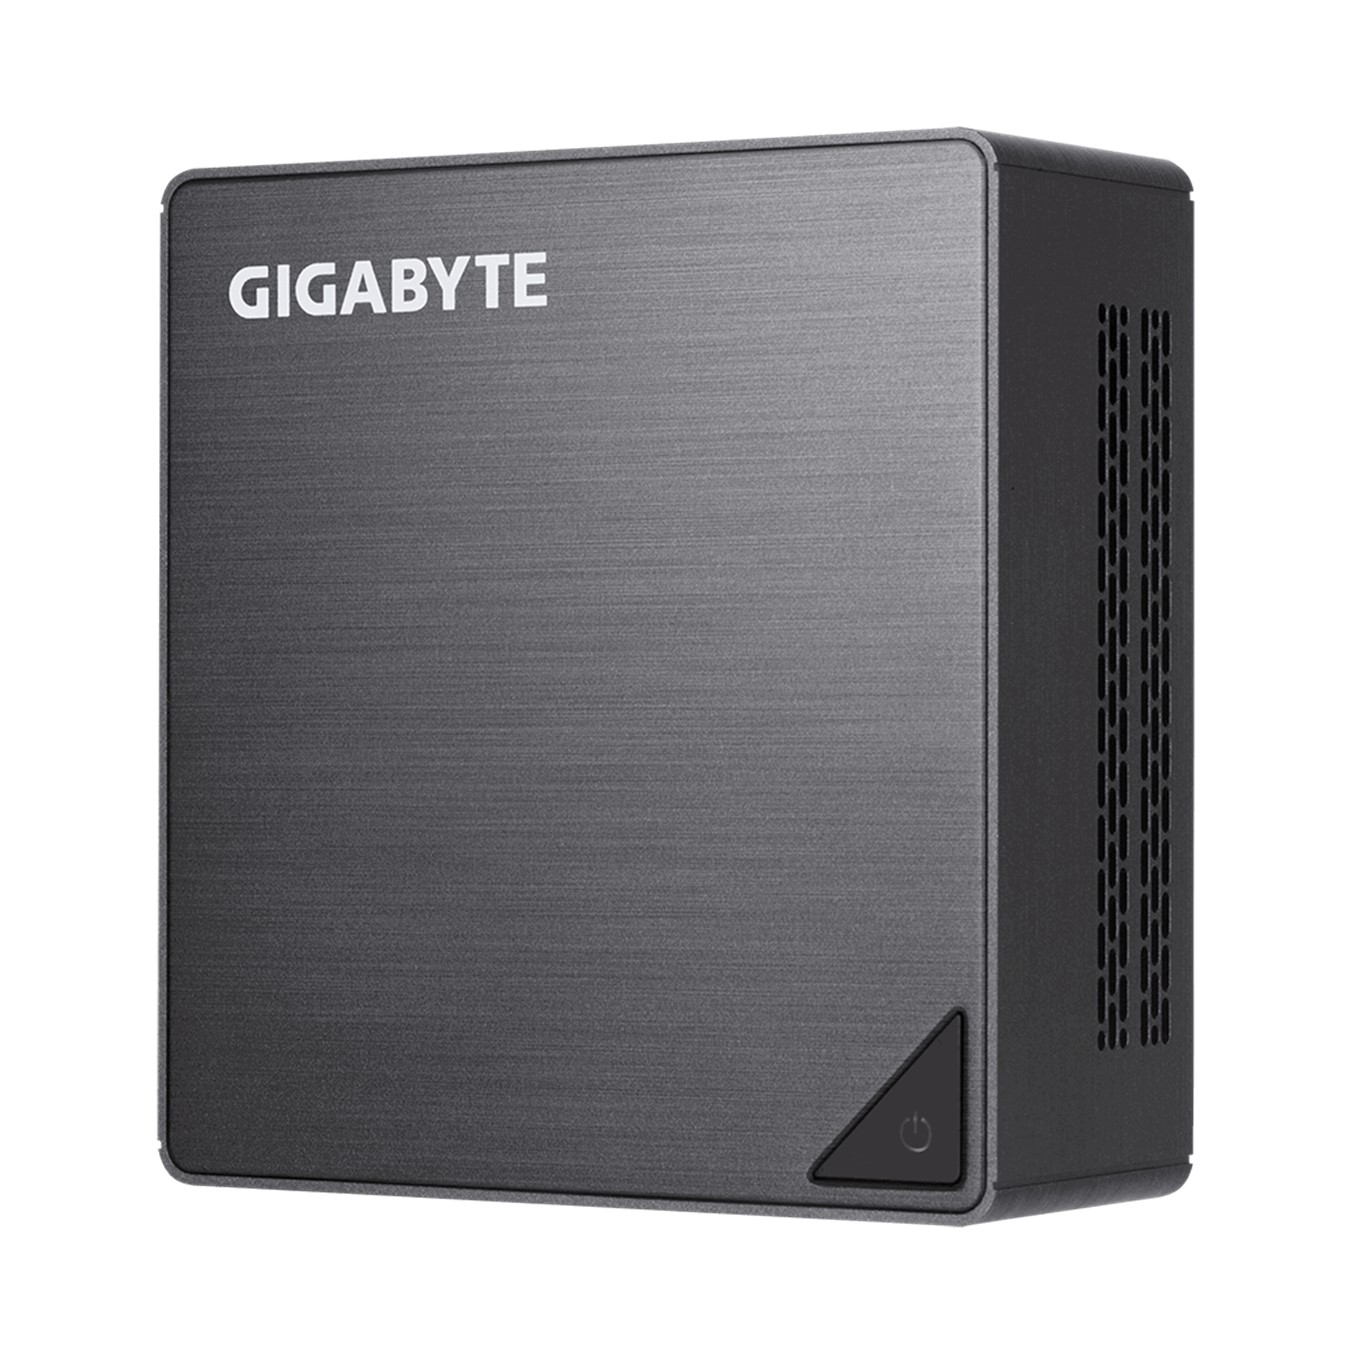 Barebone gigabyte brix gr - bri3h - 8130 i3 - 8130u no ram - no hdd - sin so